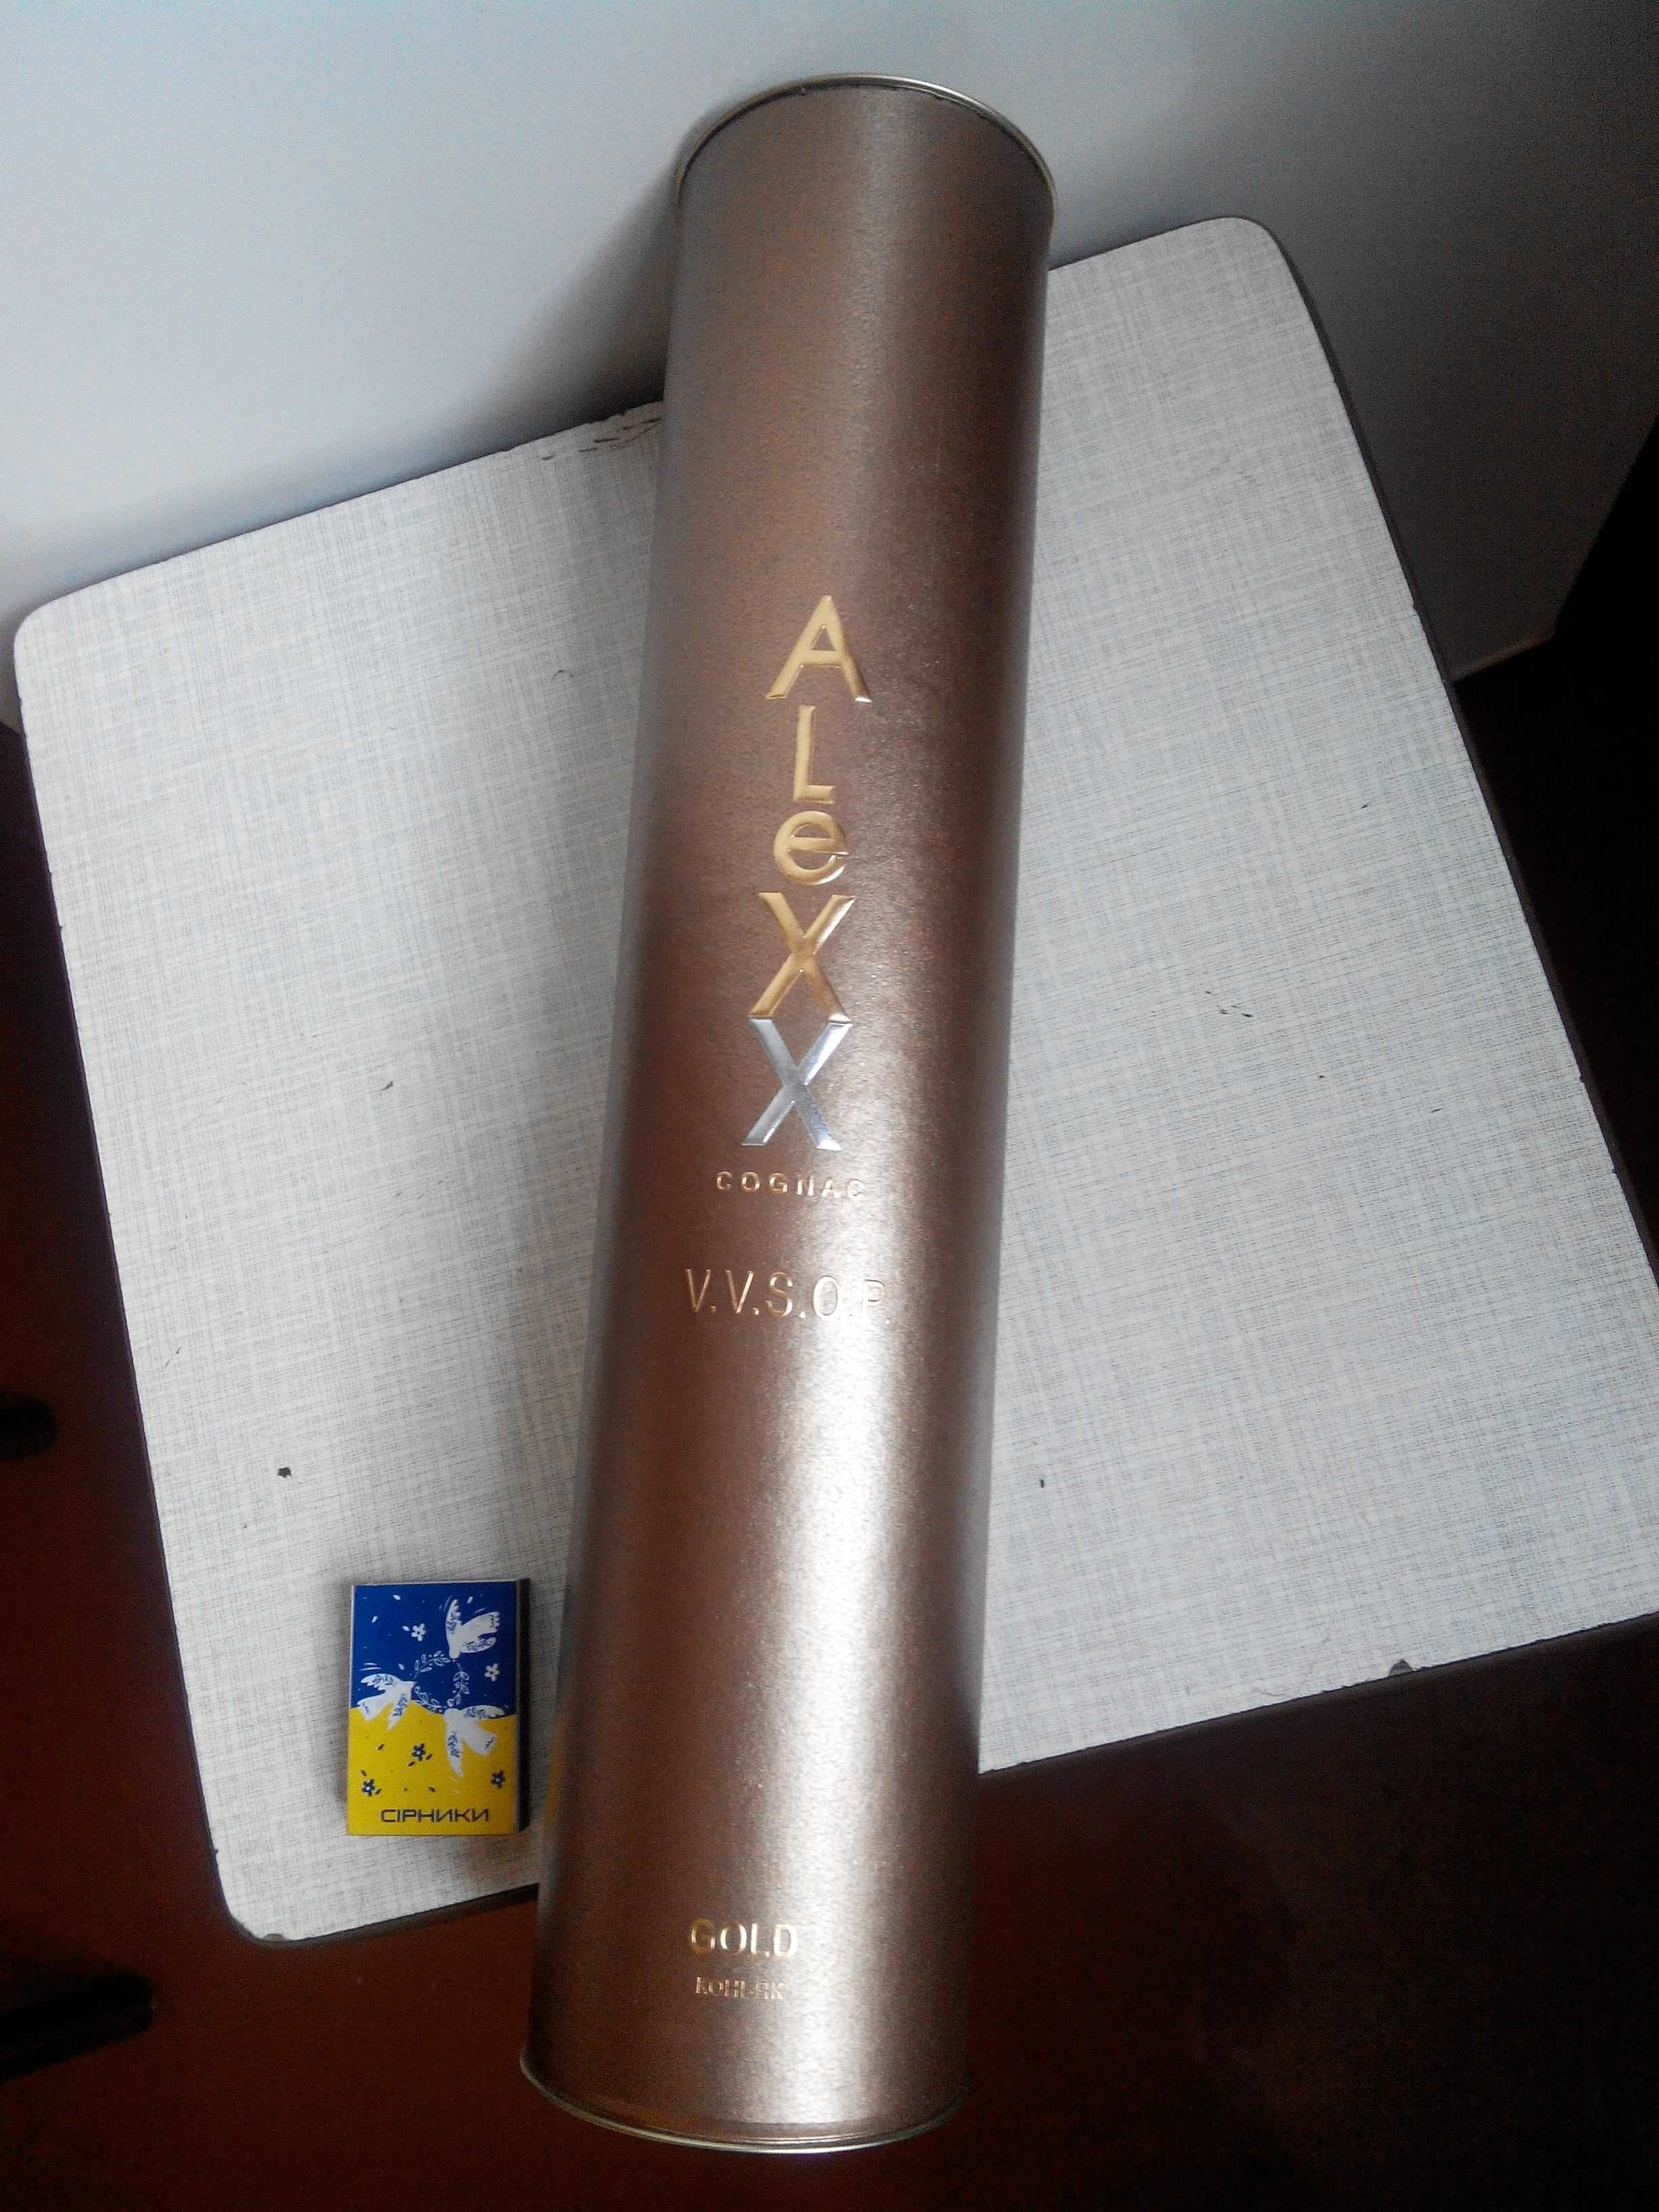 Красивая упаковка-тубус от Коньяка AleXX Gold VSOP.